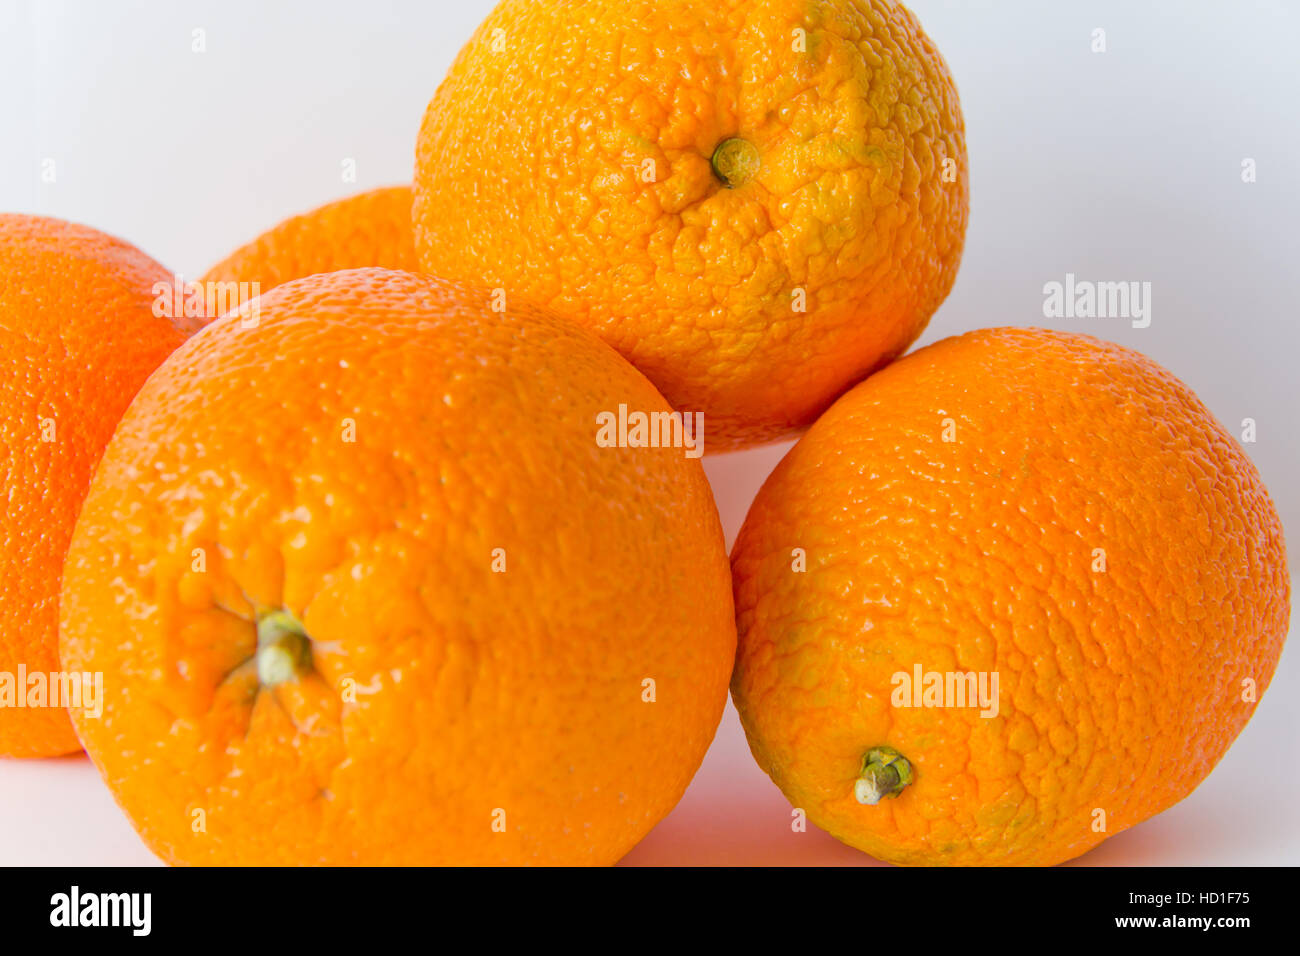 Photo of appetizing ripe oranges on white background Stock Photo